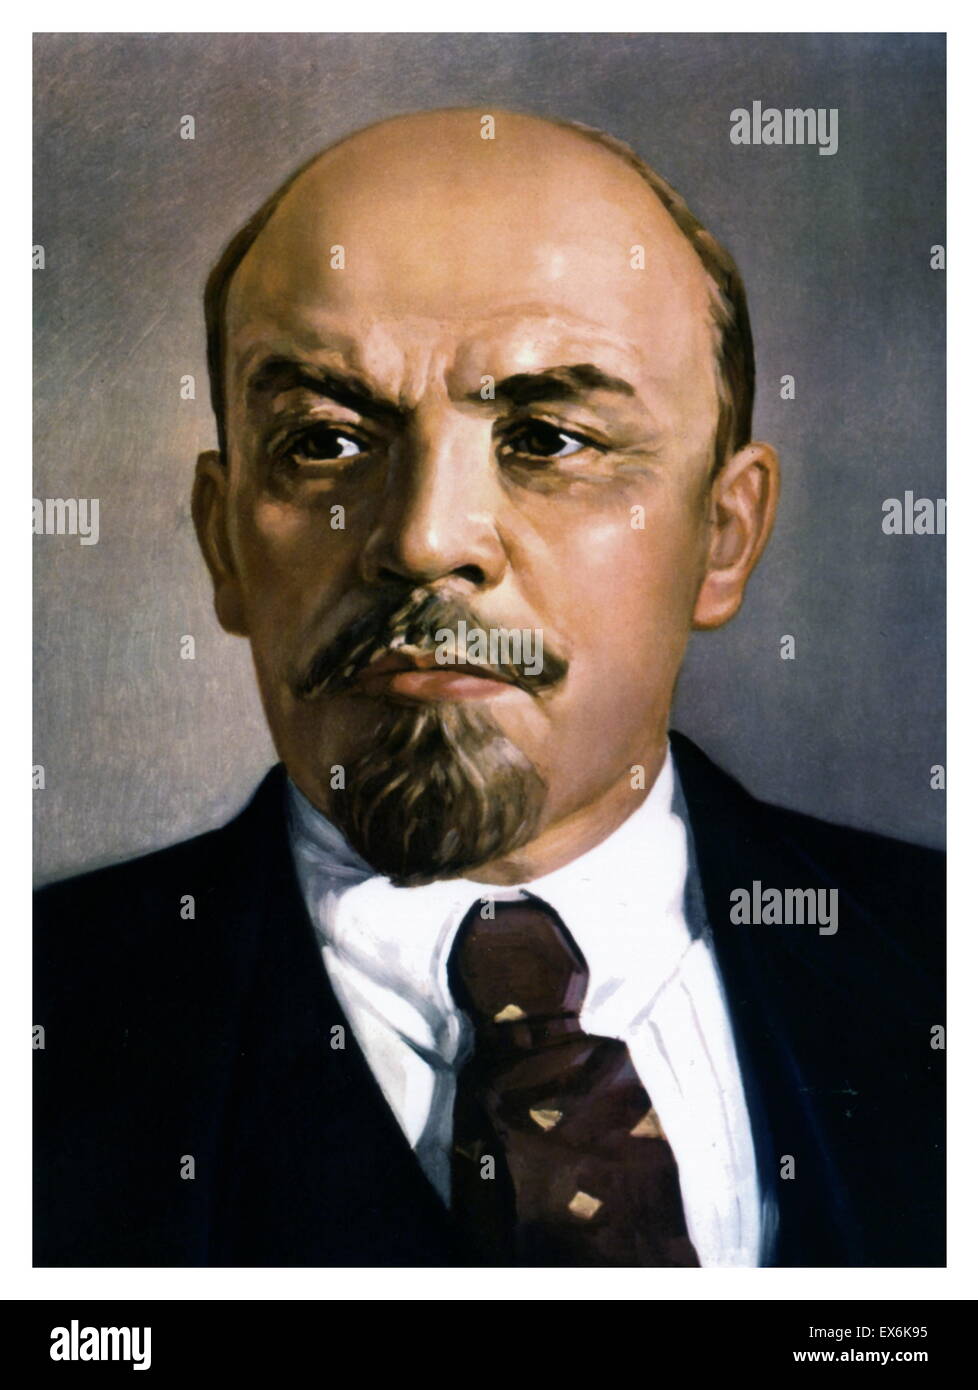 Vladimir Ilitch Oulianov alias Lénine (22 avril 1870 - 21 janvier 1924)  était un révolutionnaire communiste russe, homme politique et théoricien de  la politique Photo Stock - Alamy